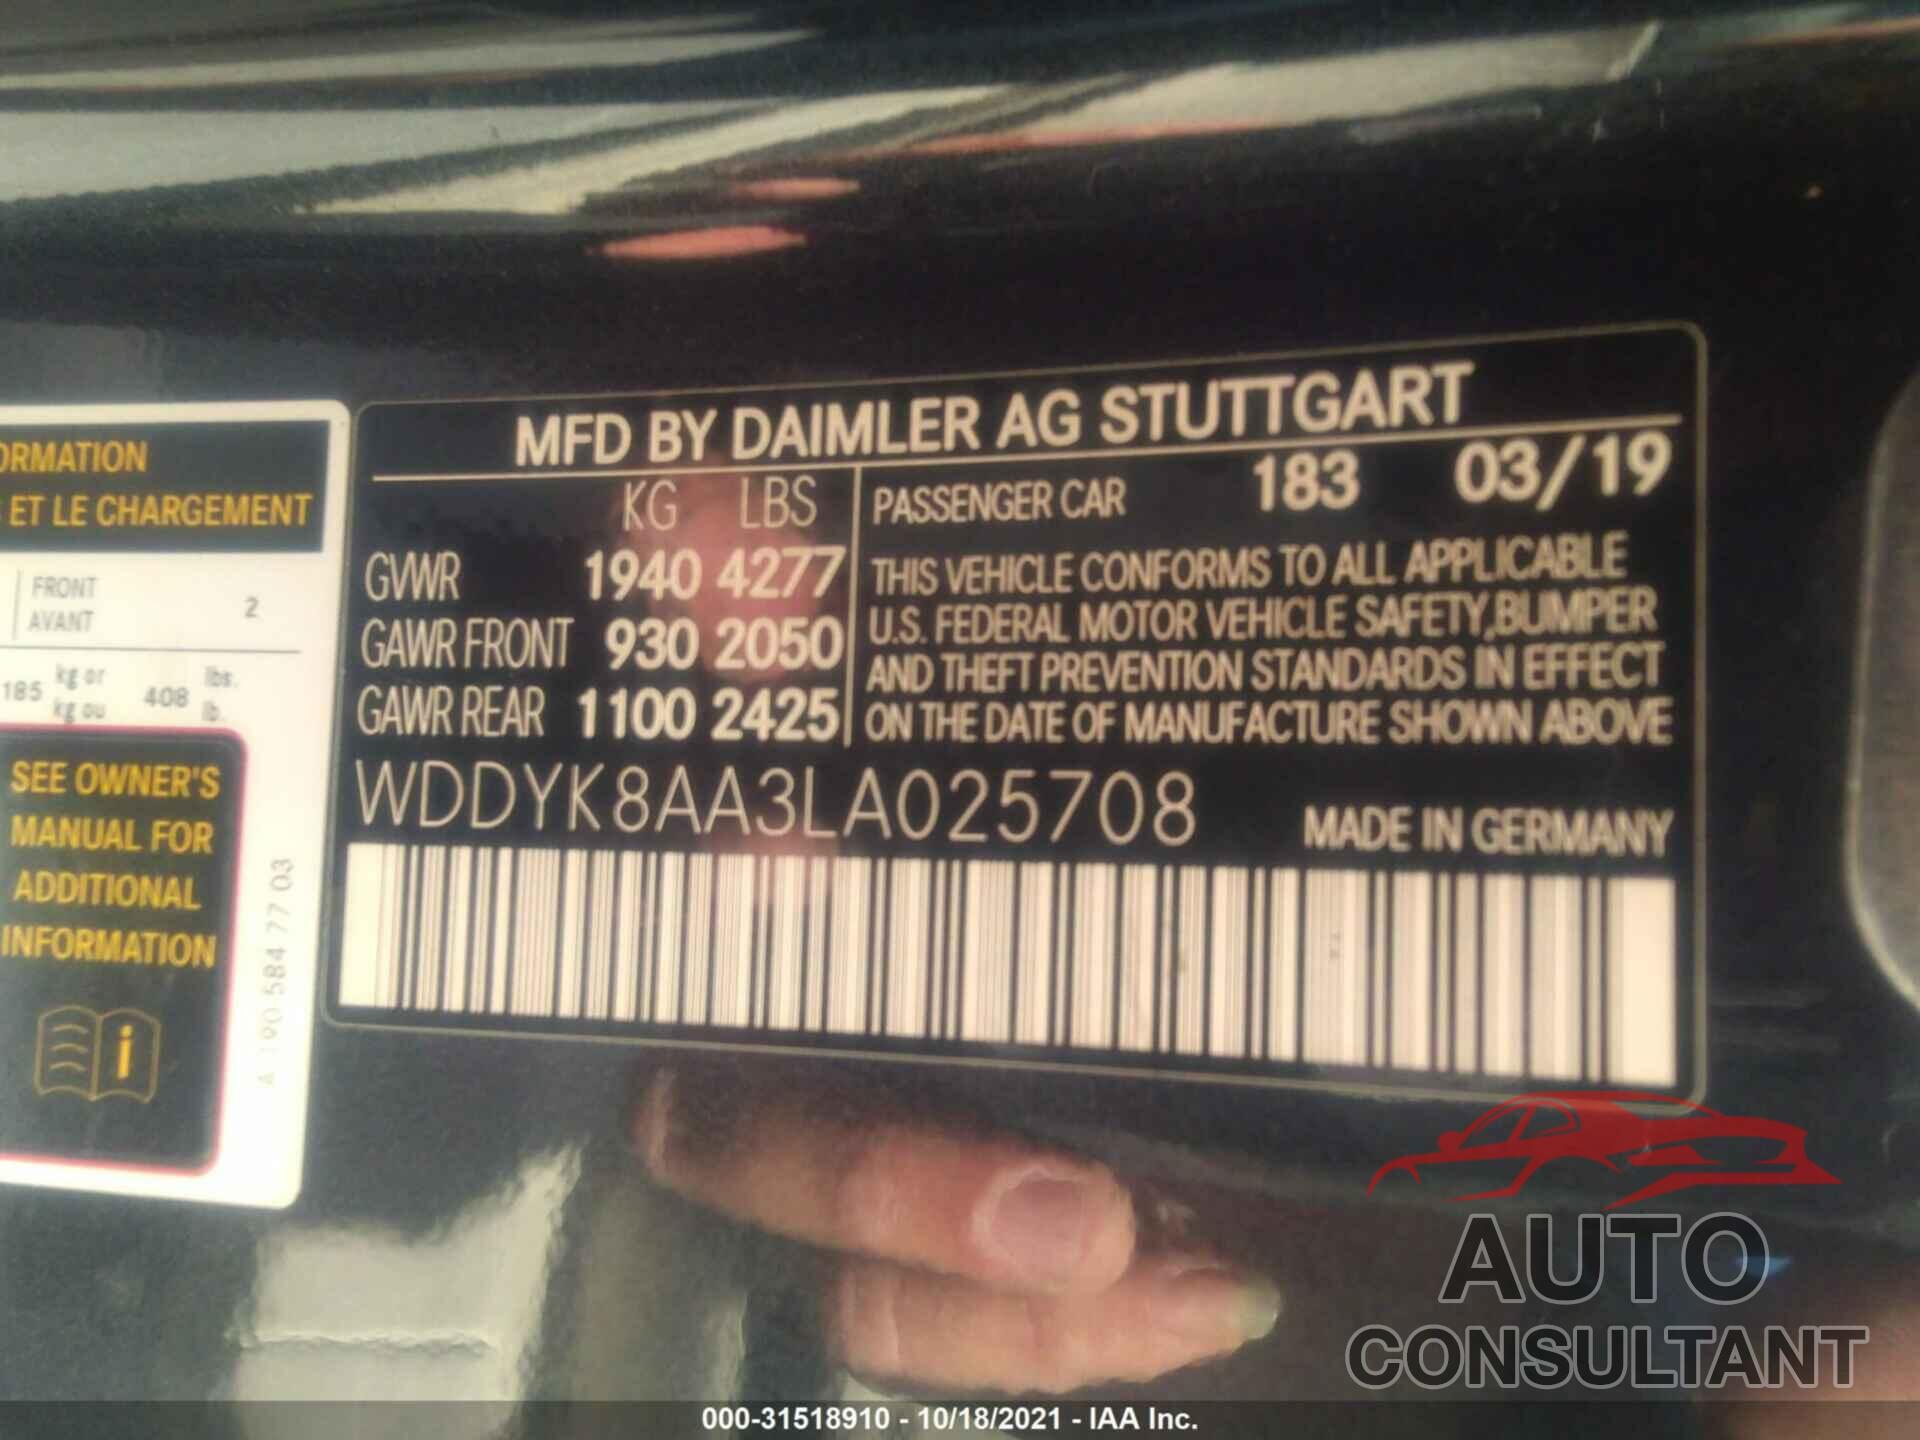 MERCEDES-BENZ AMG GT 2020 - WDDYK8AA3LA025708